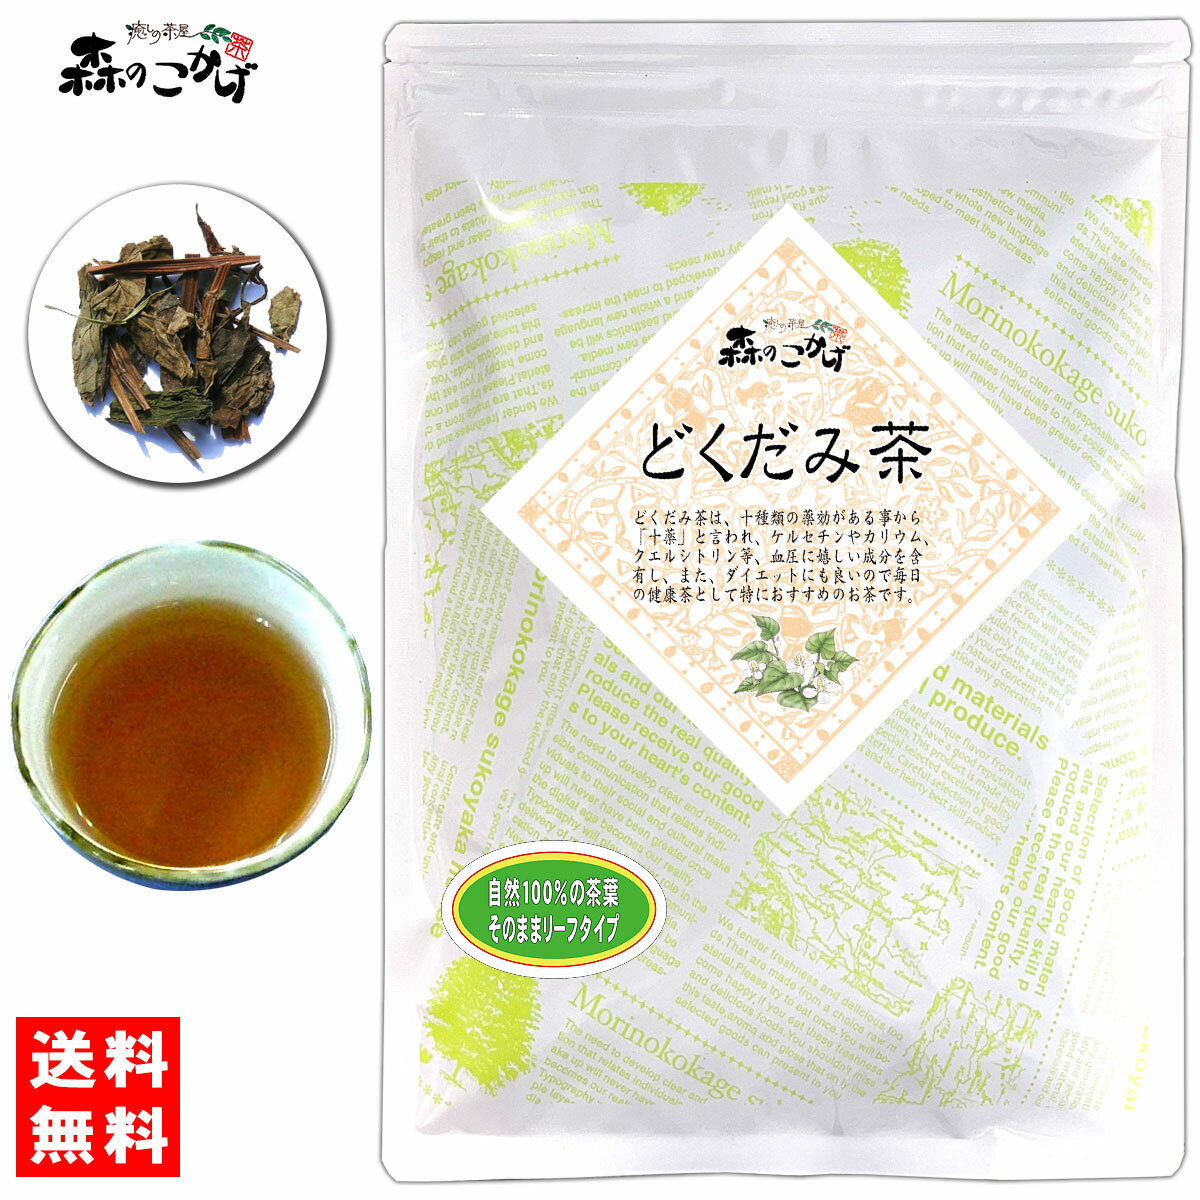 5【送料無料】 どくだみ茶 (150g) 茶